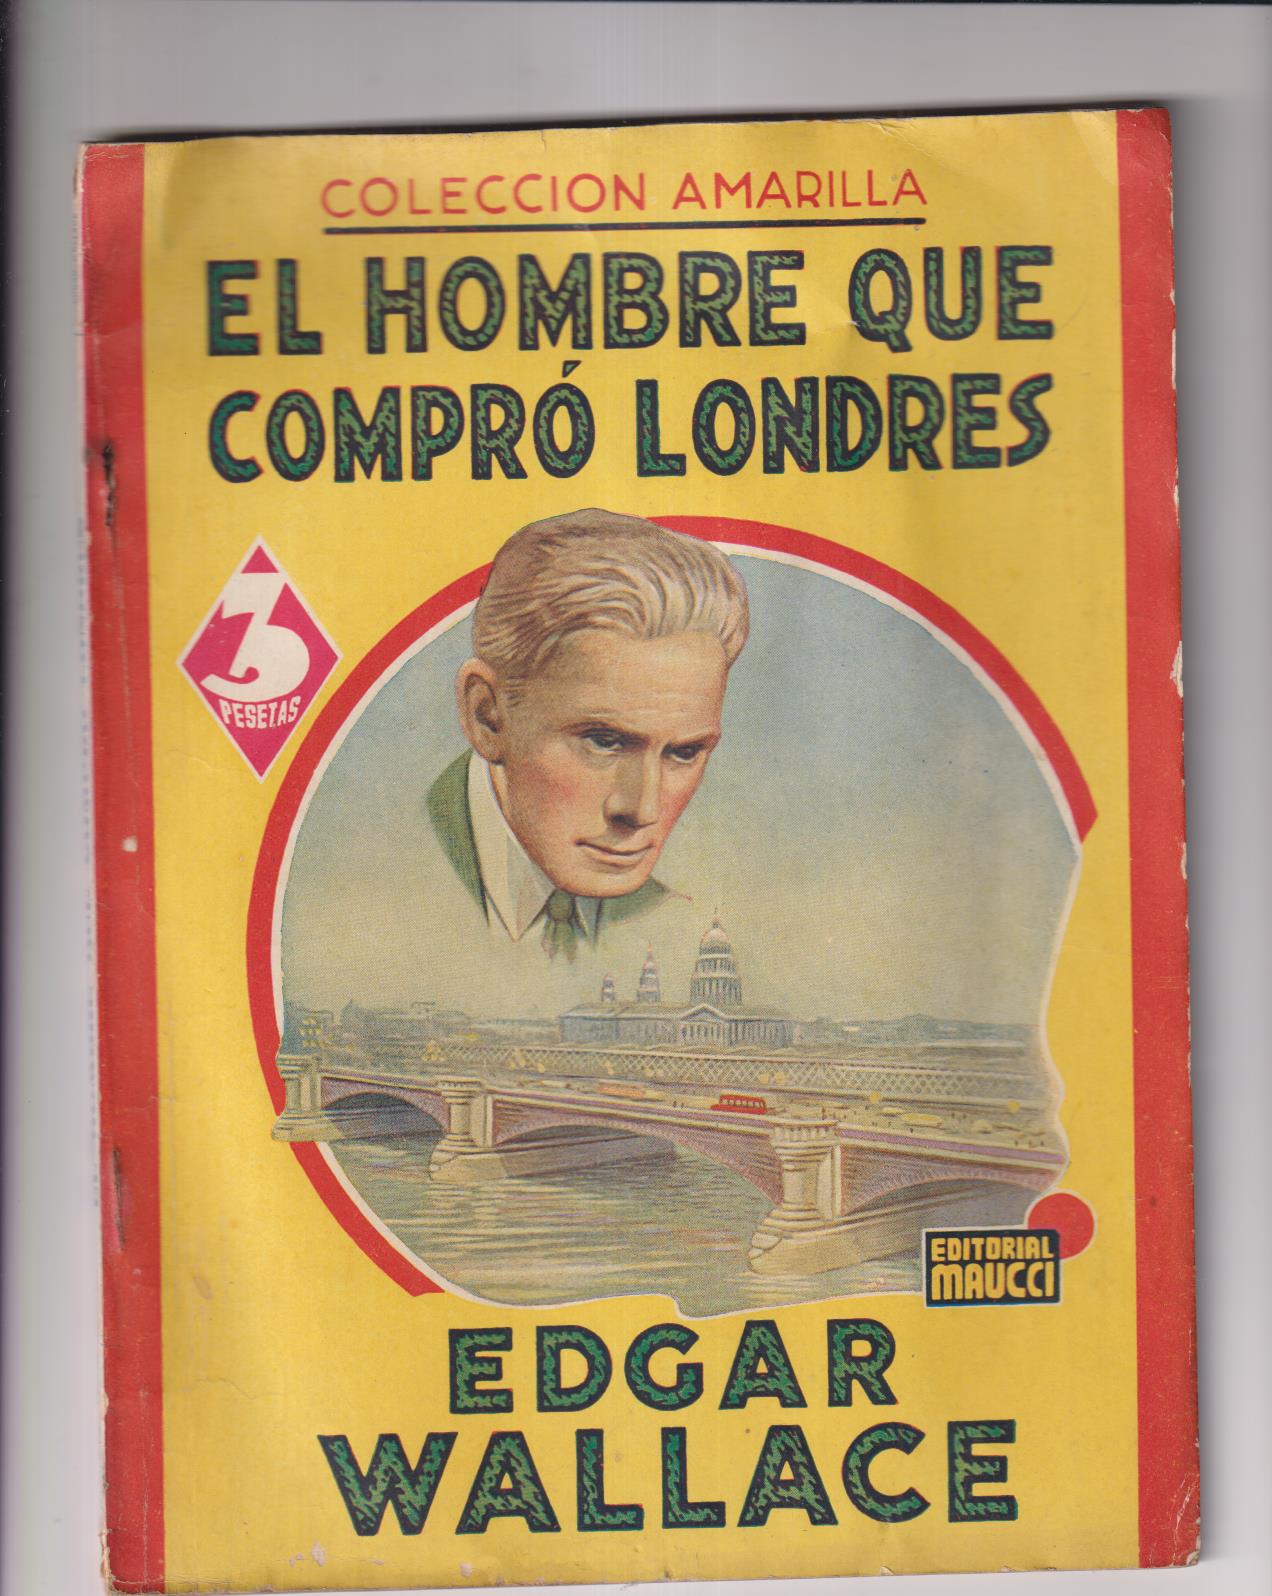 Edgar Wallace. El hombre que compro Londres. Editorial maucci